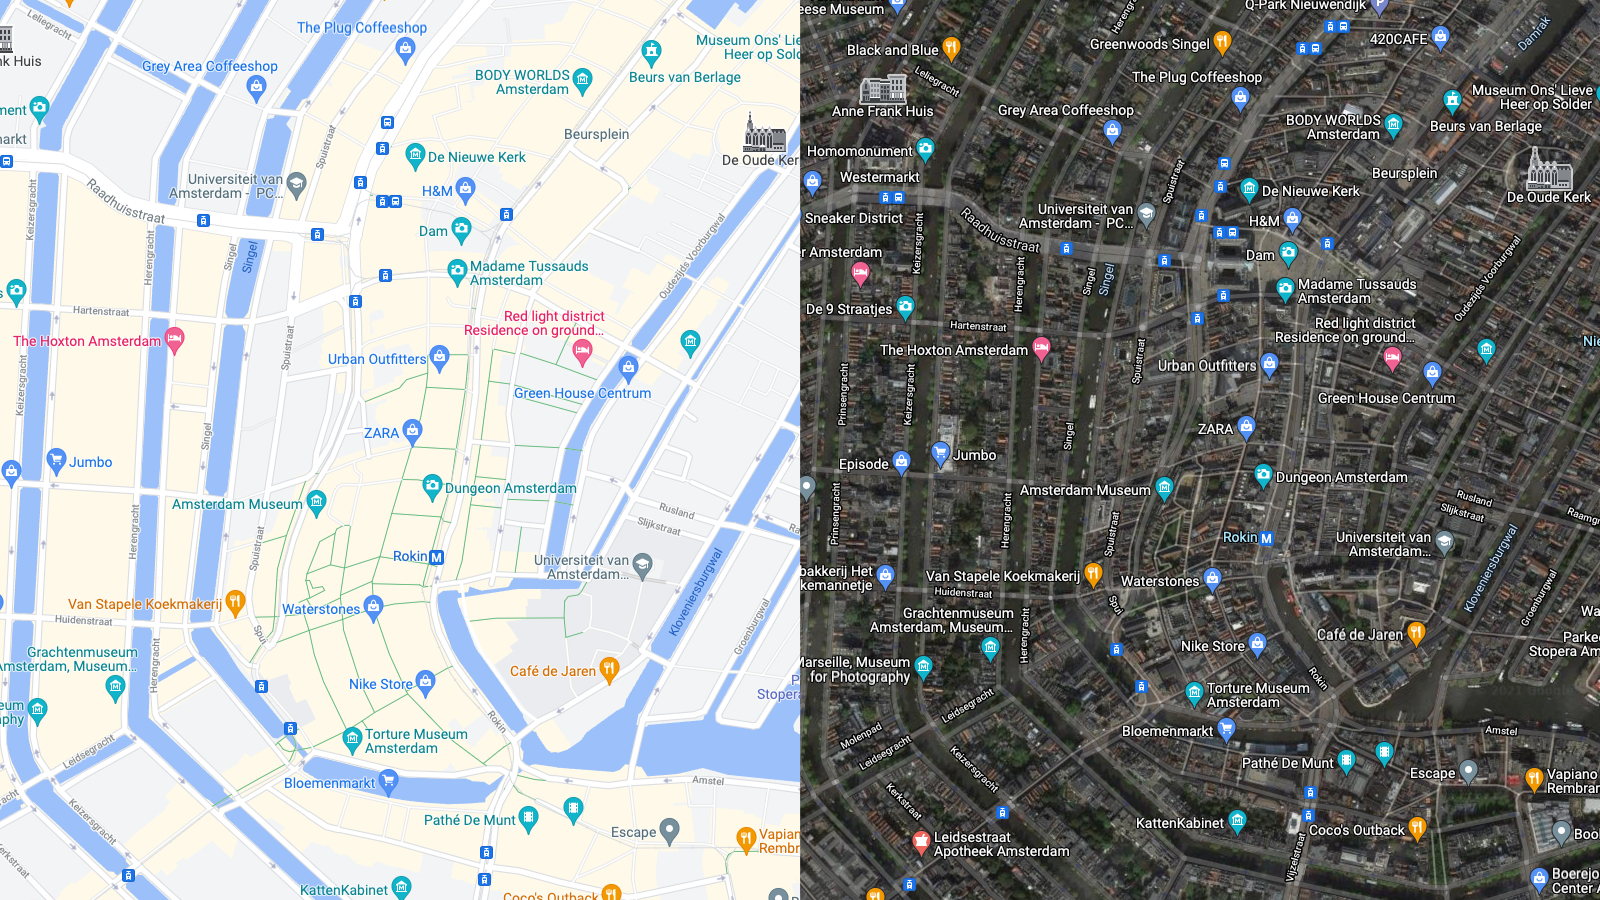 Links de normale Google Maps, rechts met satellietbeelden. Afbeelding: Google, Dennis Wilman/Business Insider